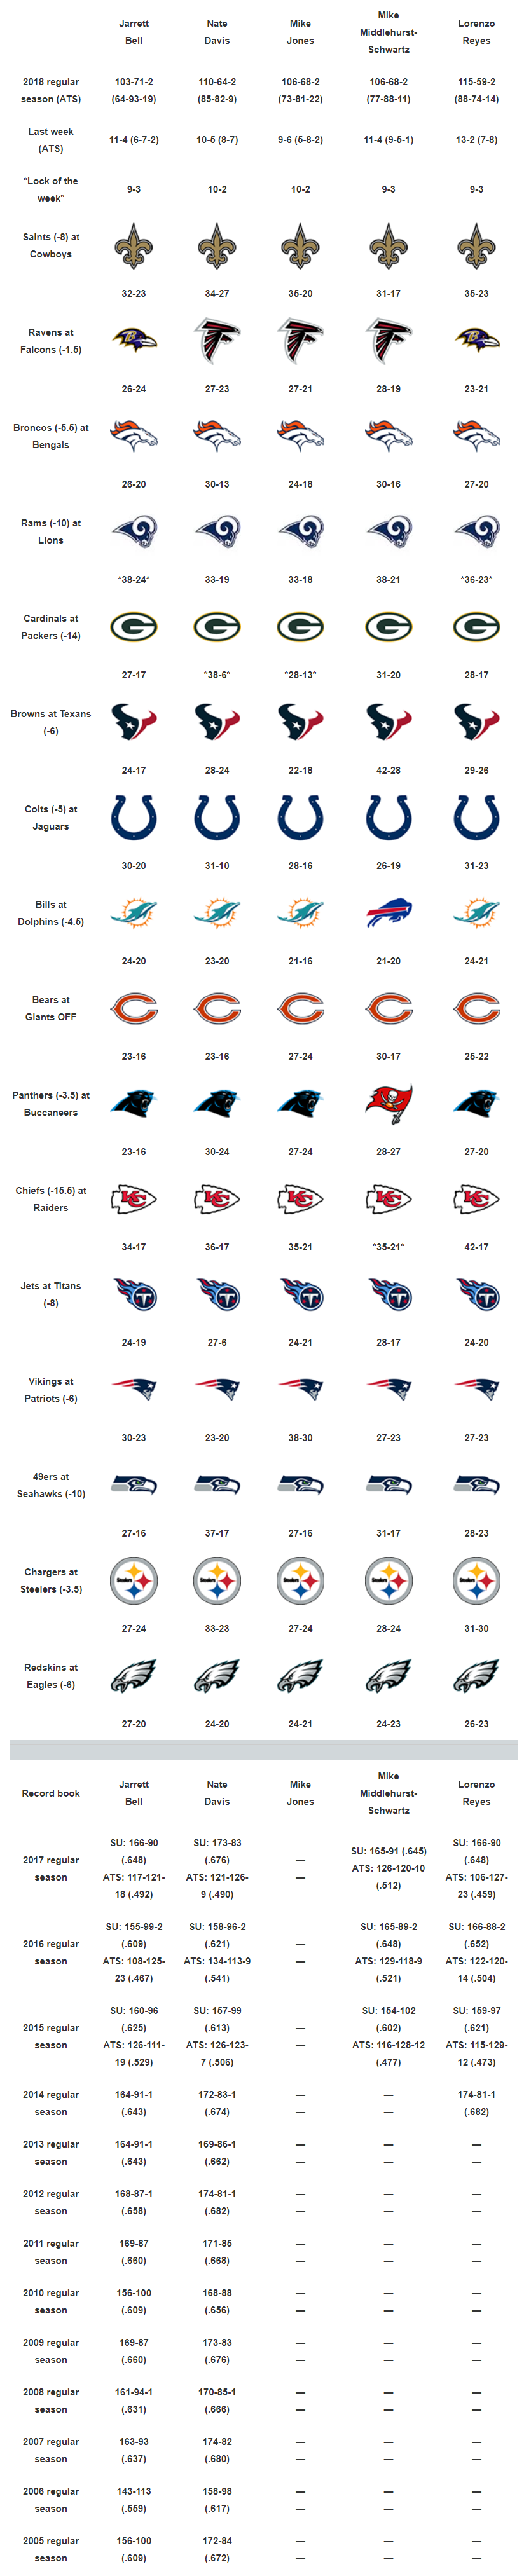 NFL Expert Picks, Predictions, Lines: Week 10